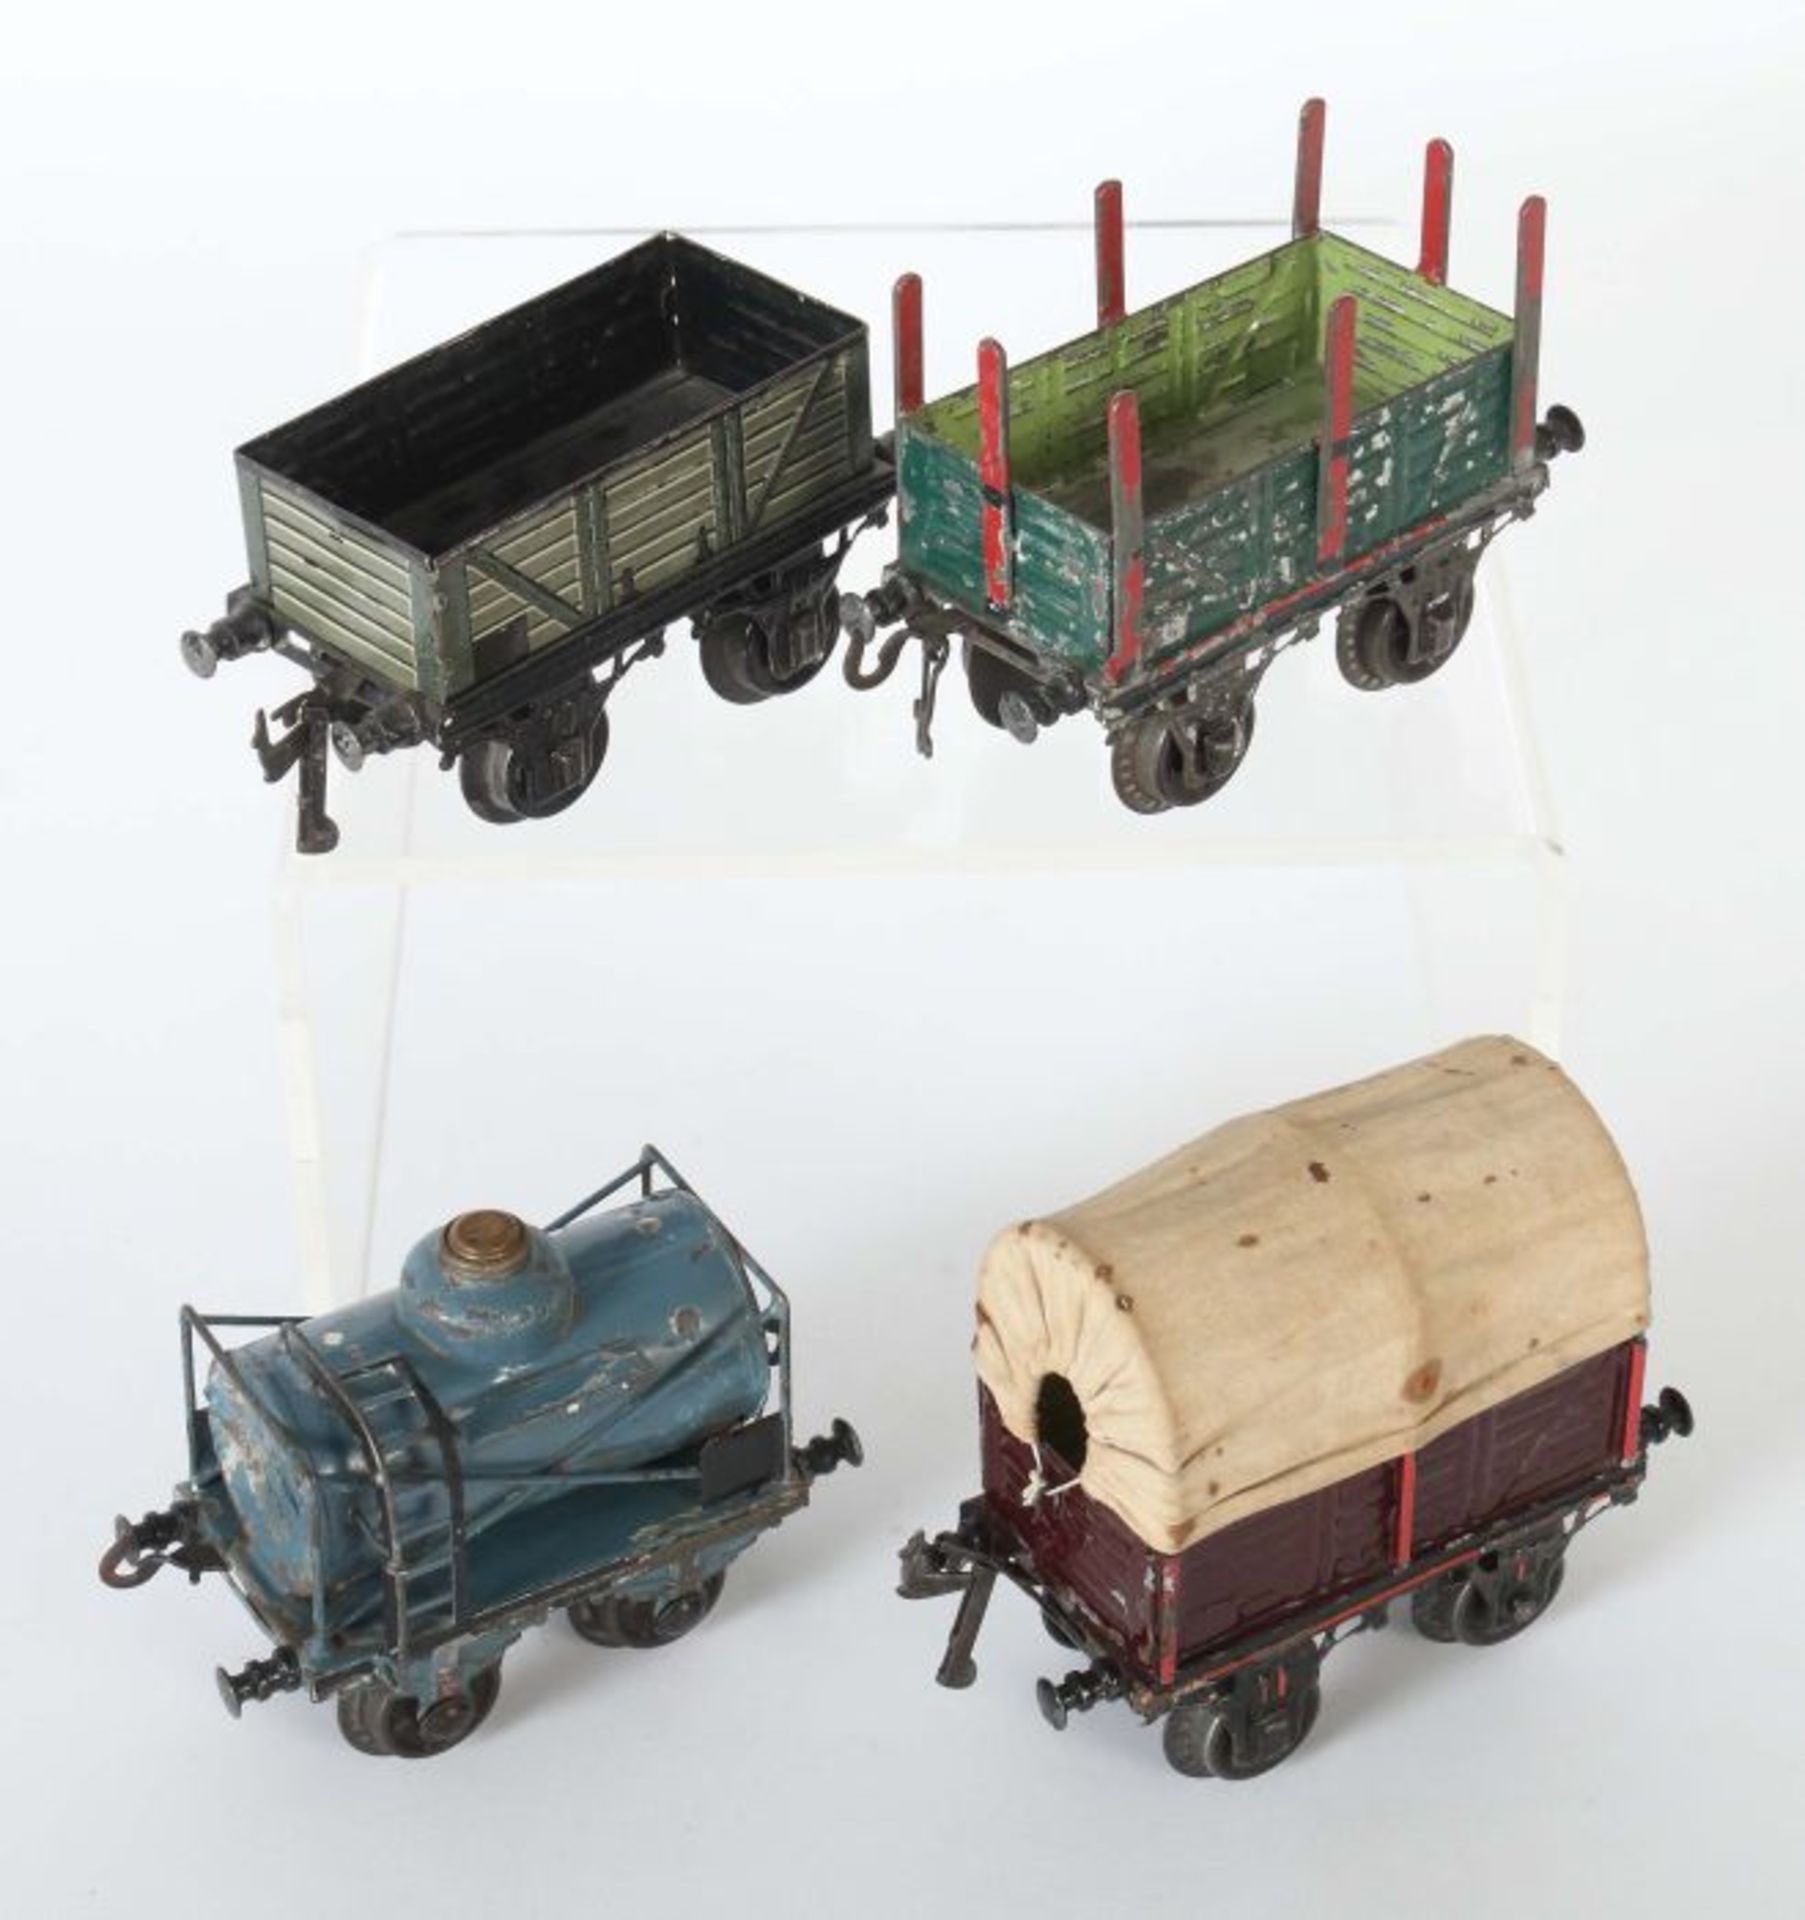 4 Güterwagen Bing, Spur 1, 1 x 10/512 offener Güterwagen, Lattenoptik, grün/hellgrün, BZ 1907-1932, - Bild 2 aus 2